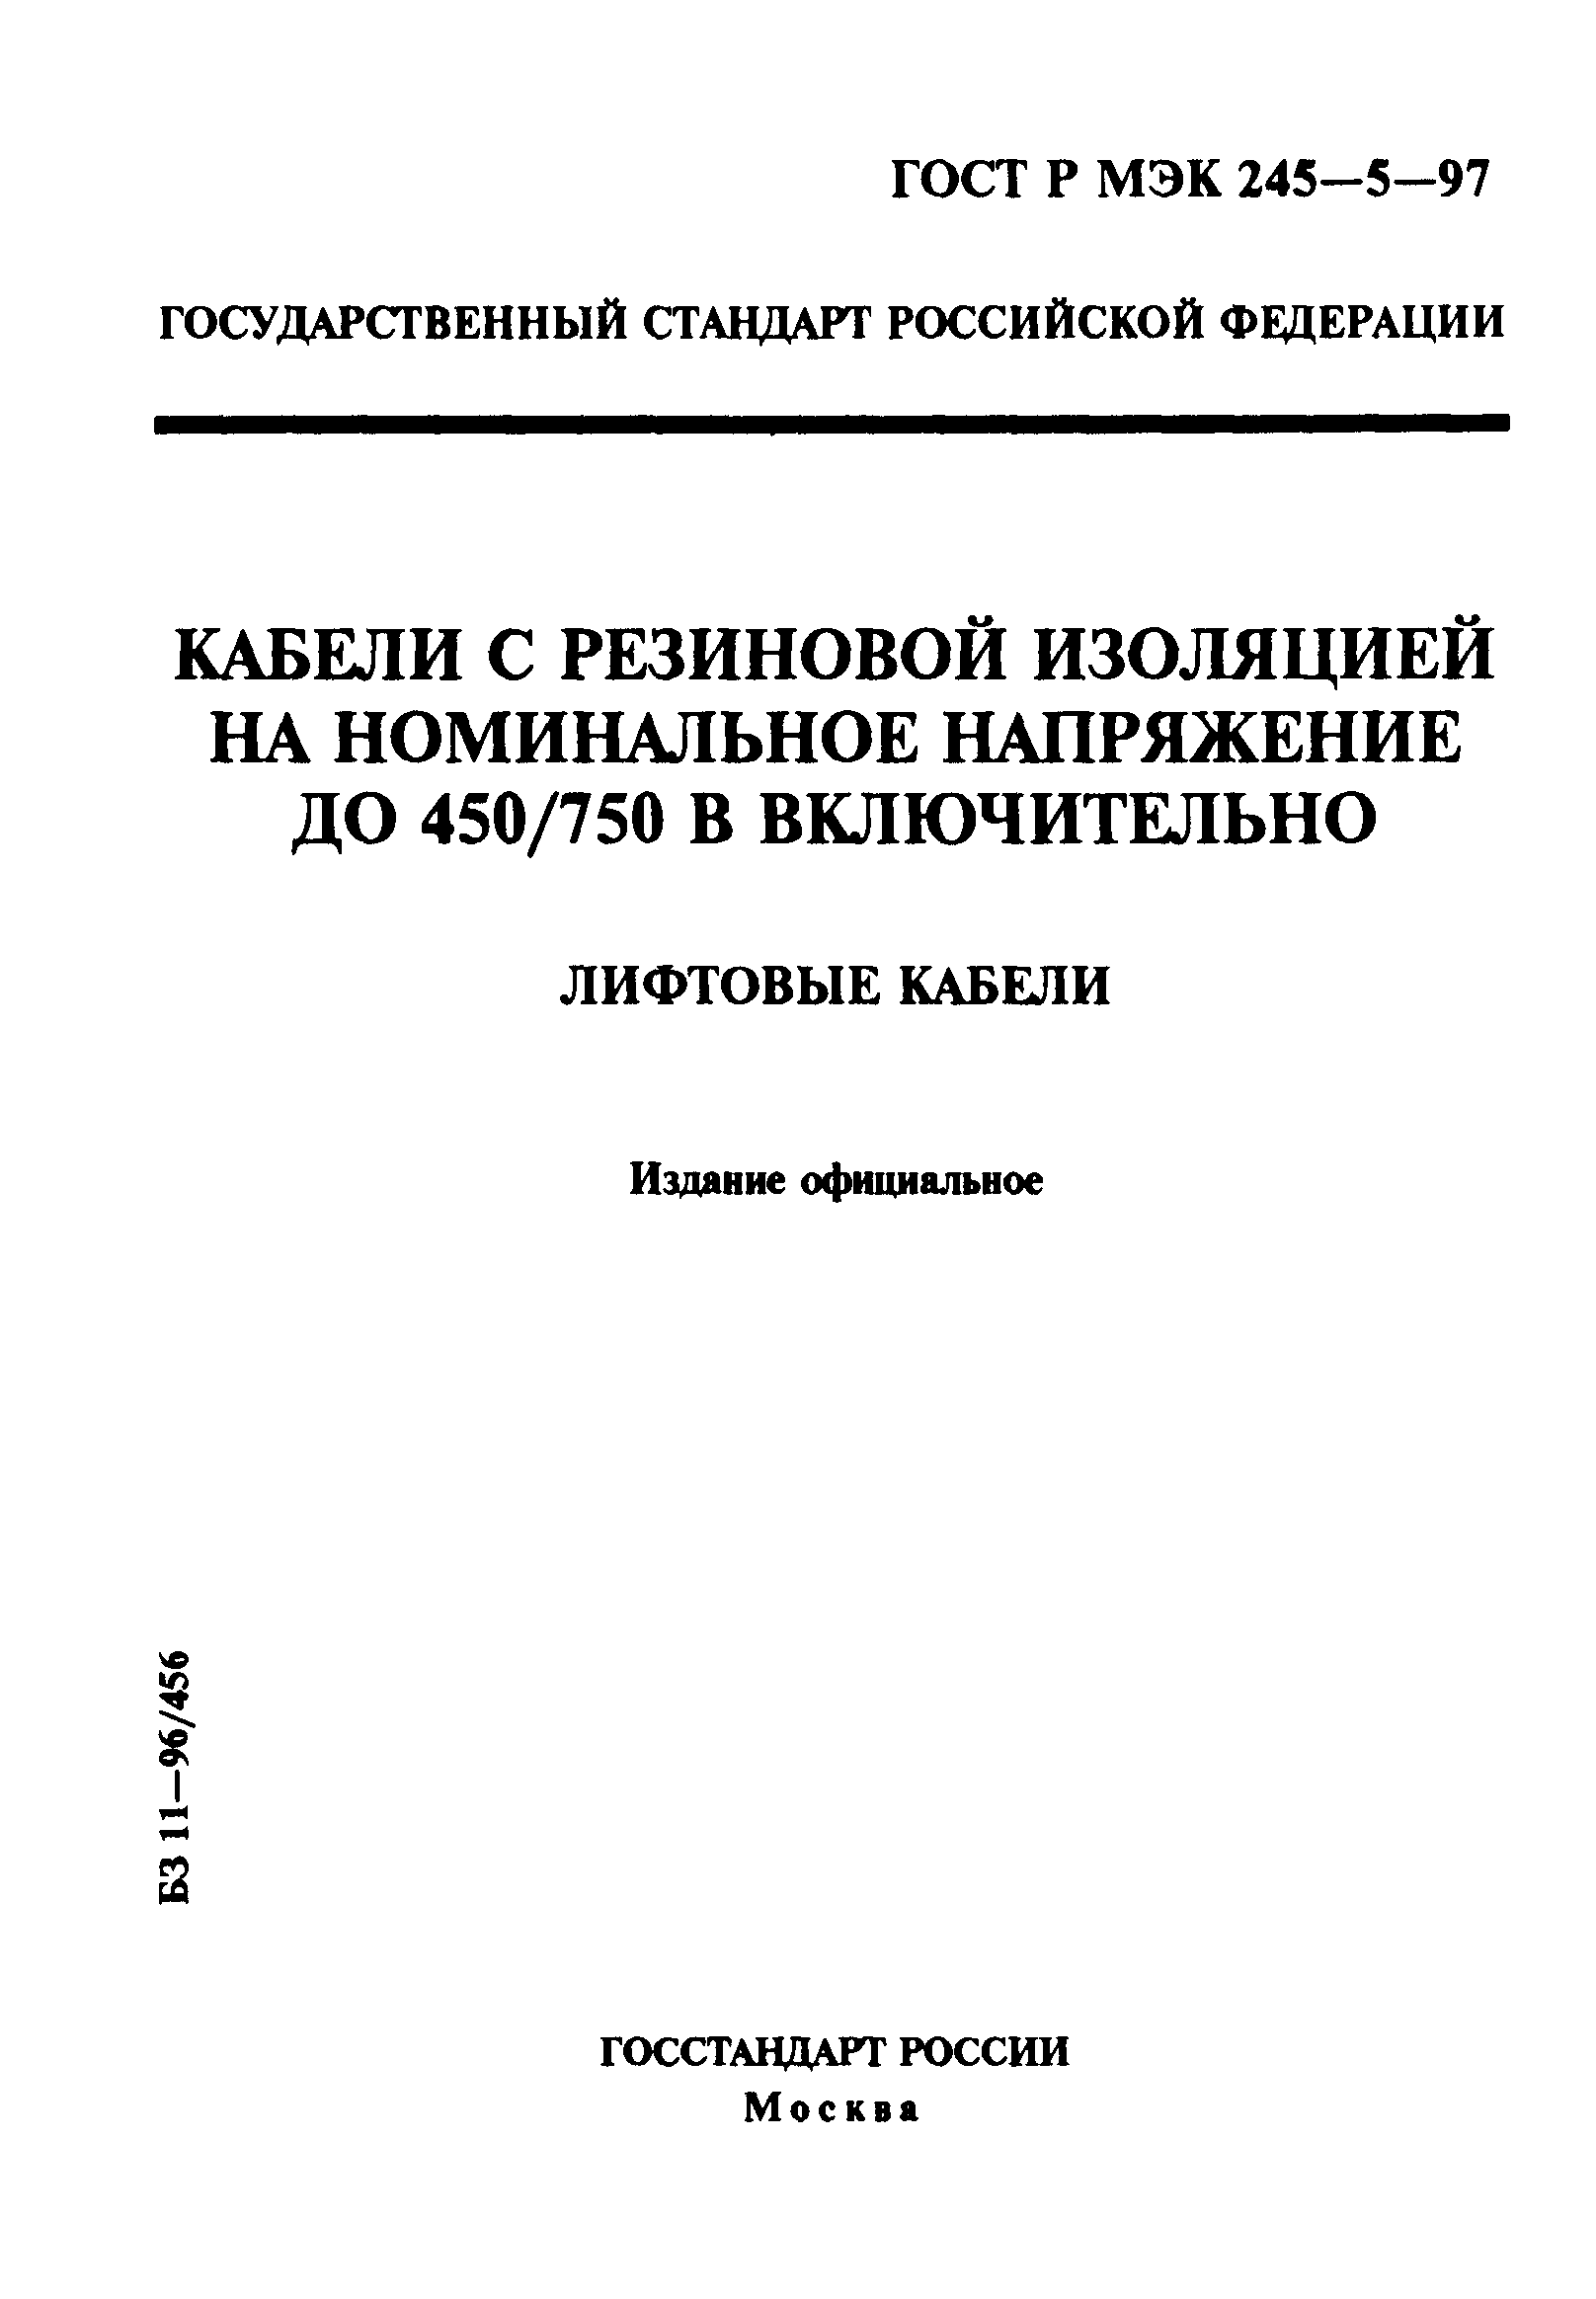 ГОСТ Р МЭК 60245-5-97